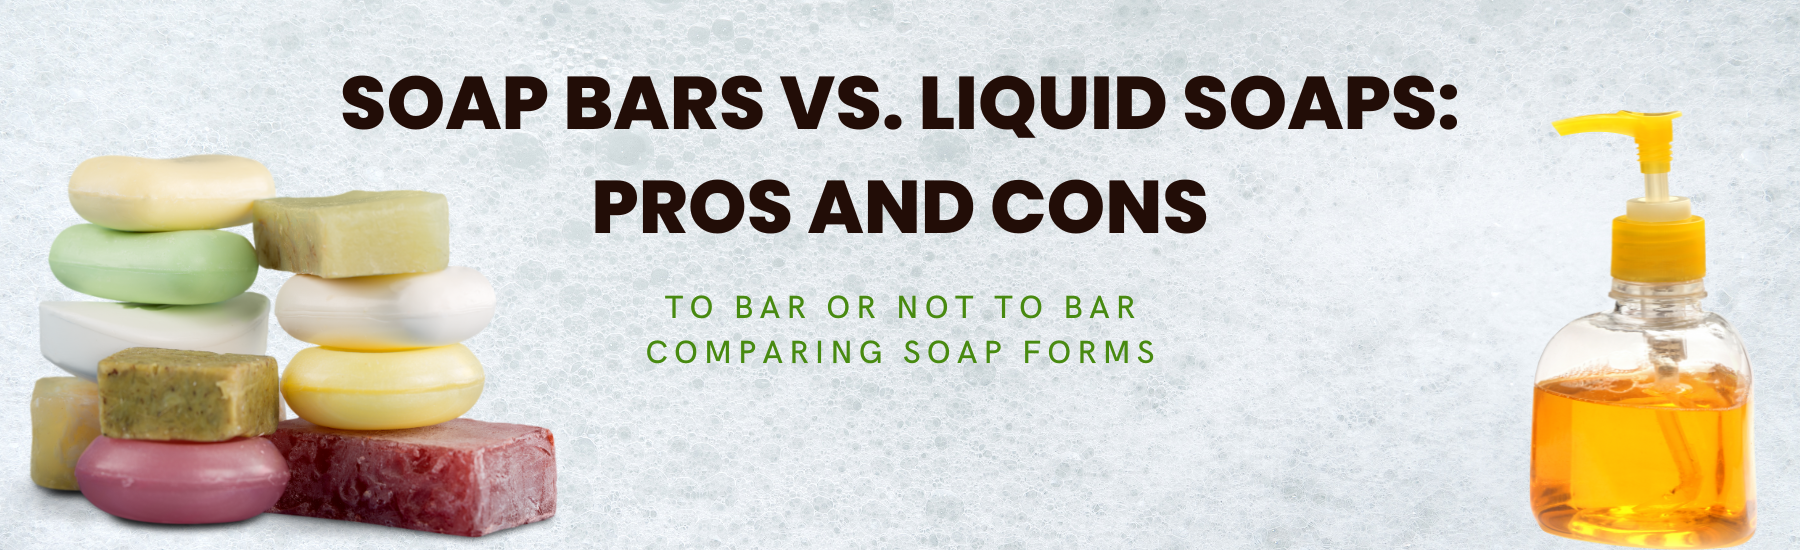 Soap Bars vs. Liquid Soaps: Pros and Cons